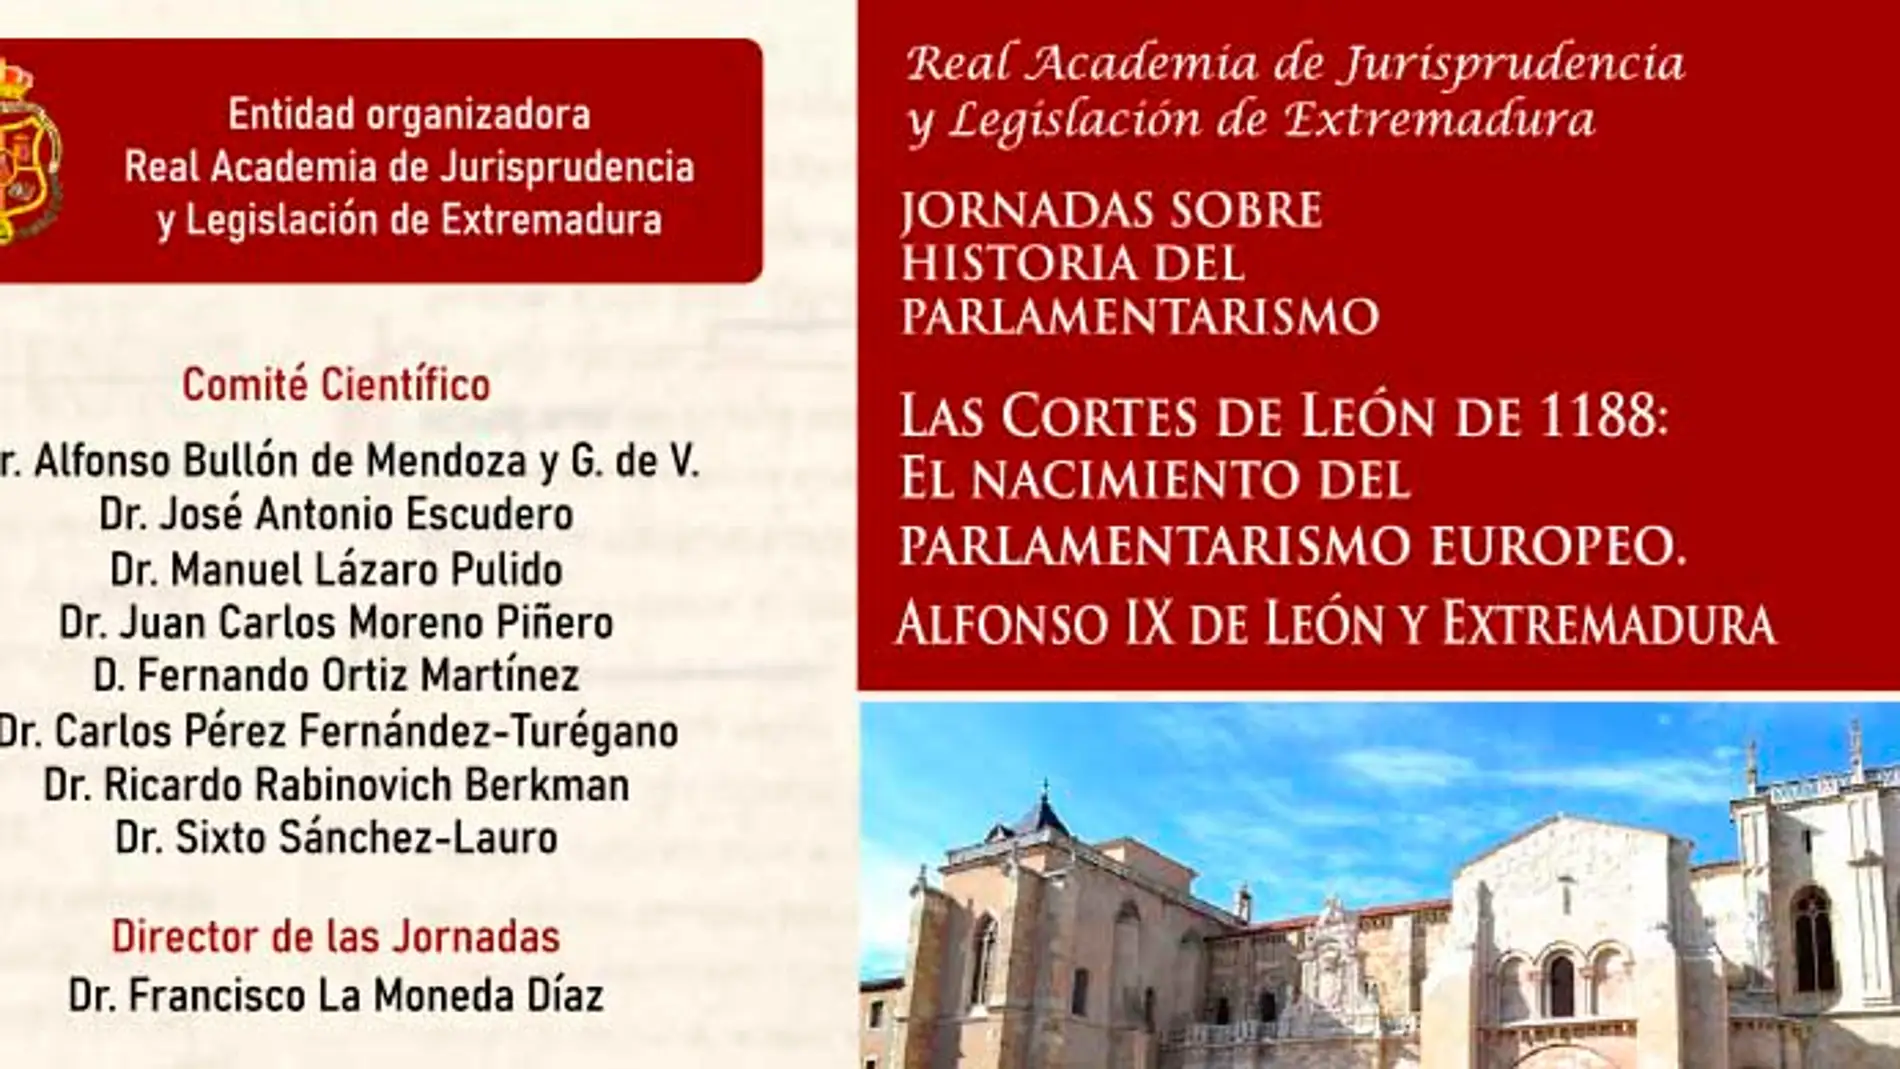 El nacimiento del parlamentarismo europeo centrará en Badajoz unas jornadas de la Academia extremeña de Jurisprudencia